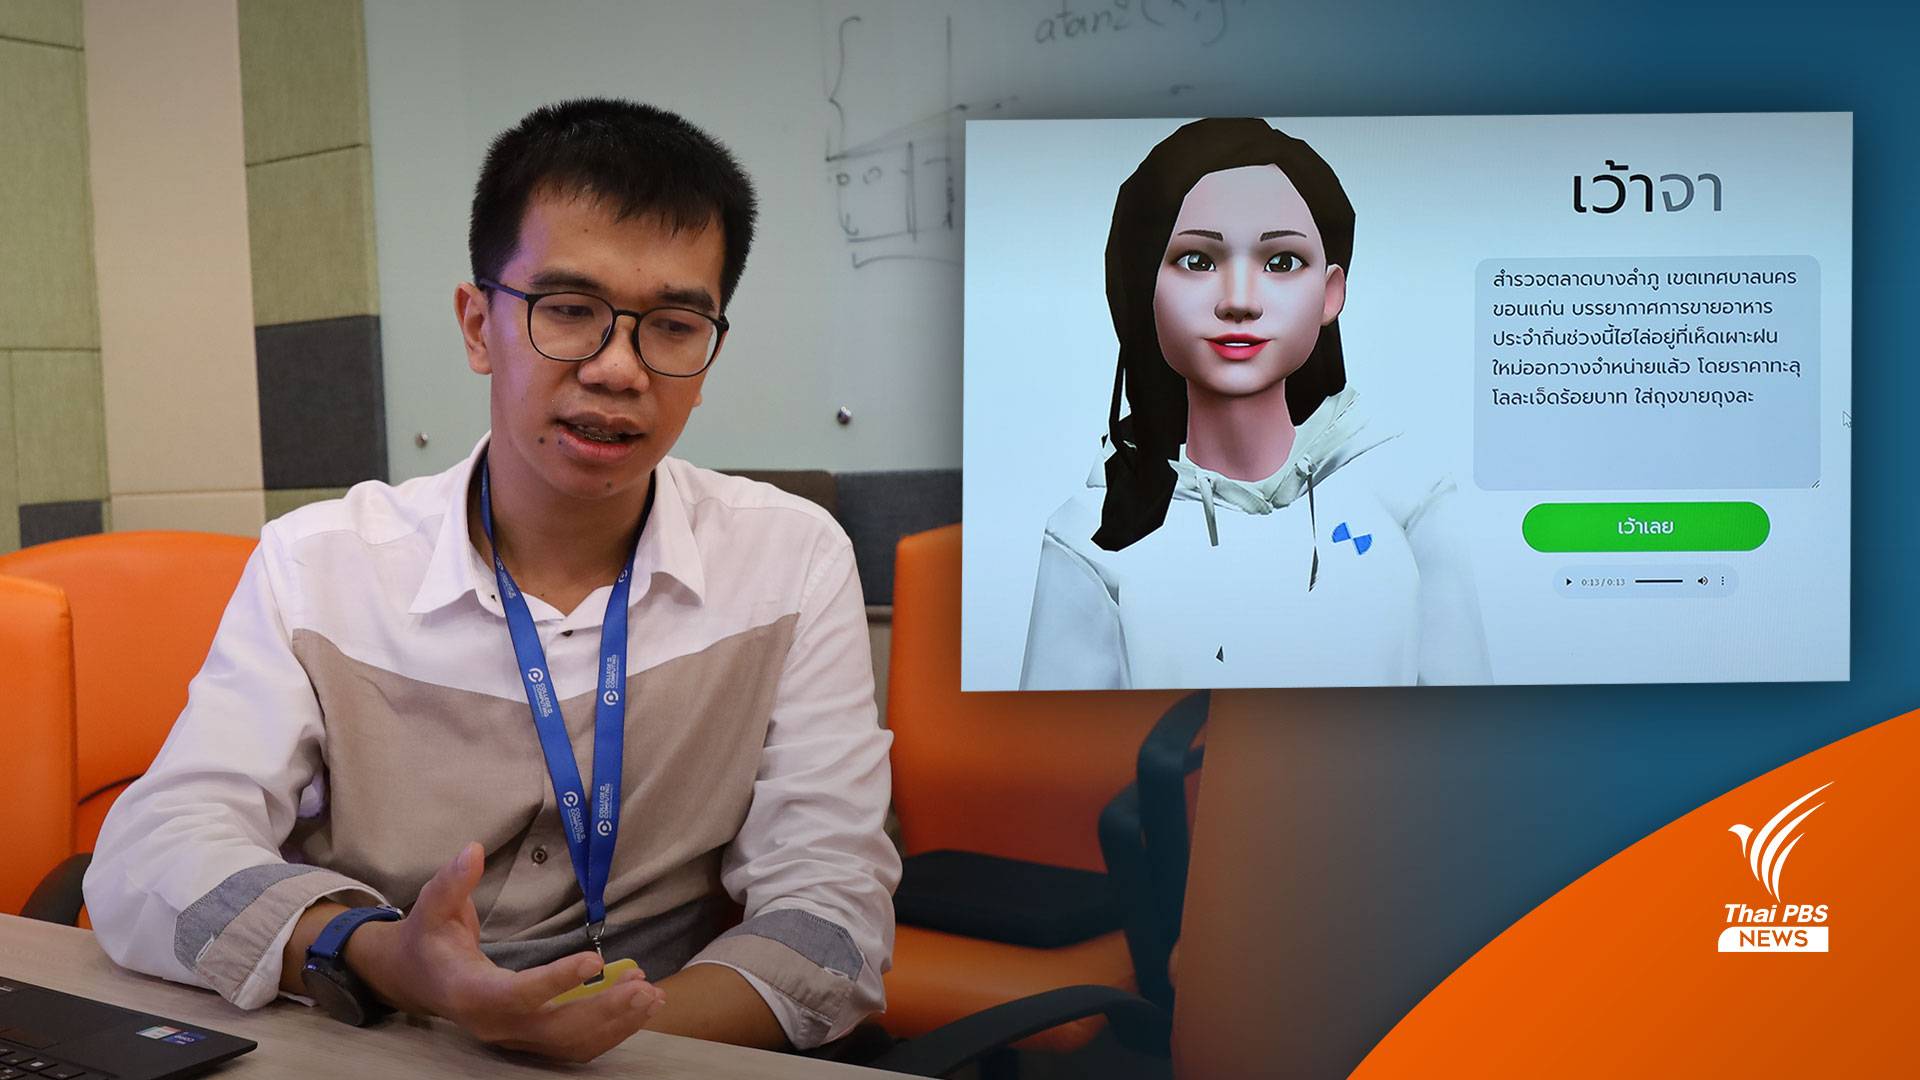 สุดเจ๋ง! มข.พัฒนา AI “เว้าจา” แปลงข้อความเป็น “เสียงพูดอีสาน” ที่แรกของไทย